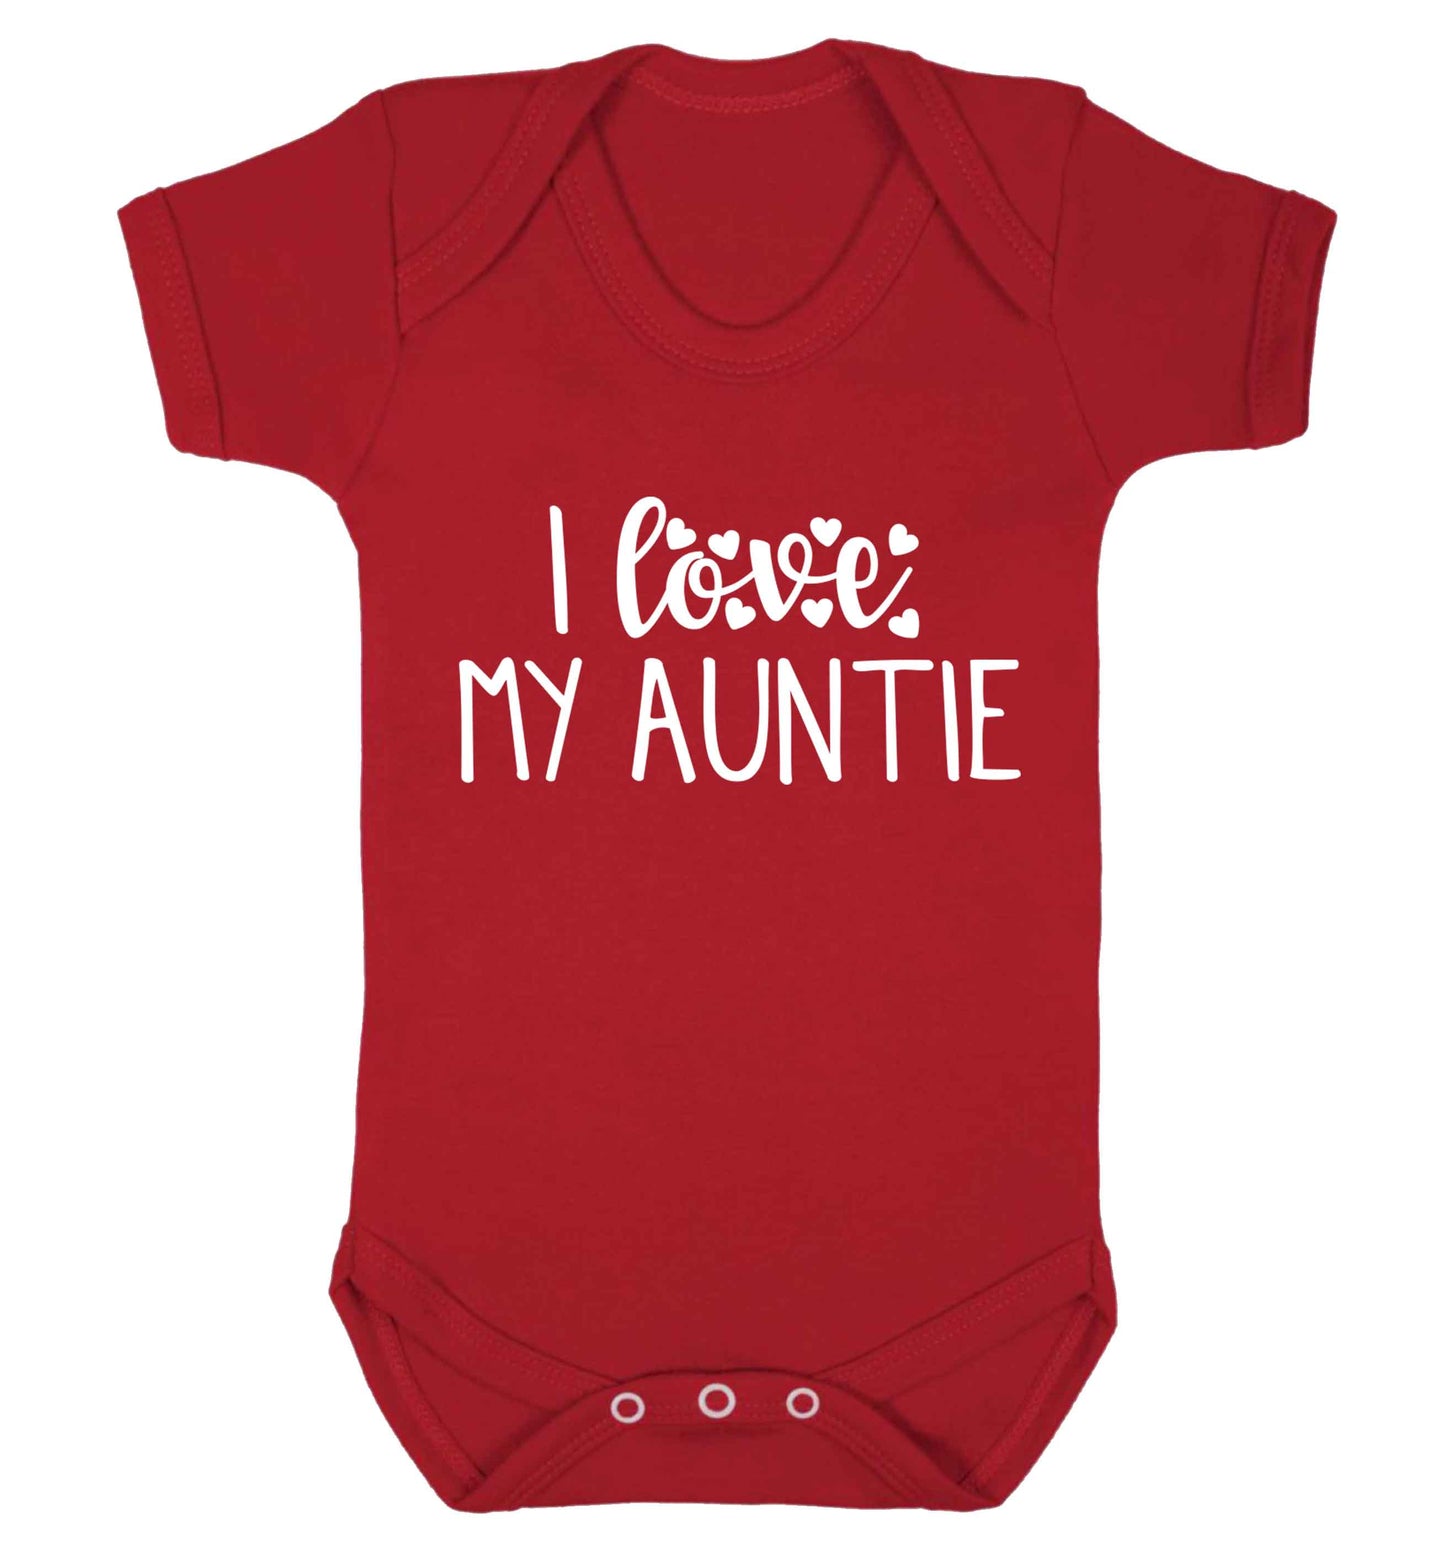 I love my auntie Baby Vest red 18-24 months